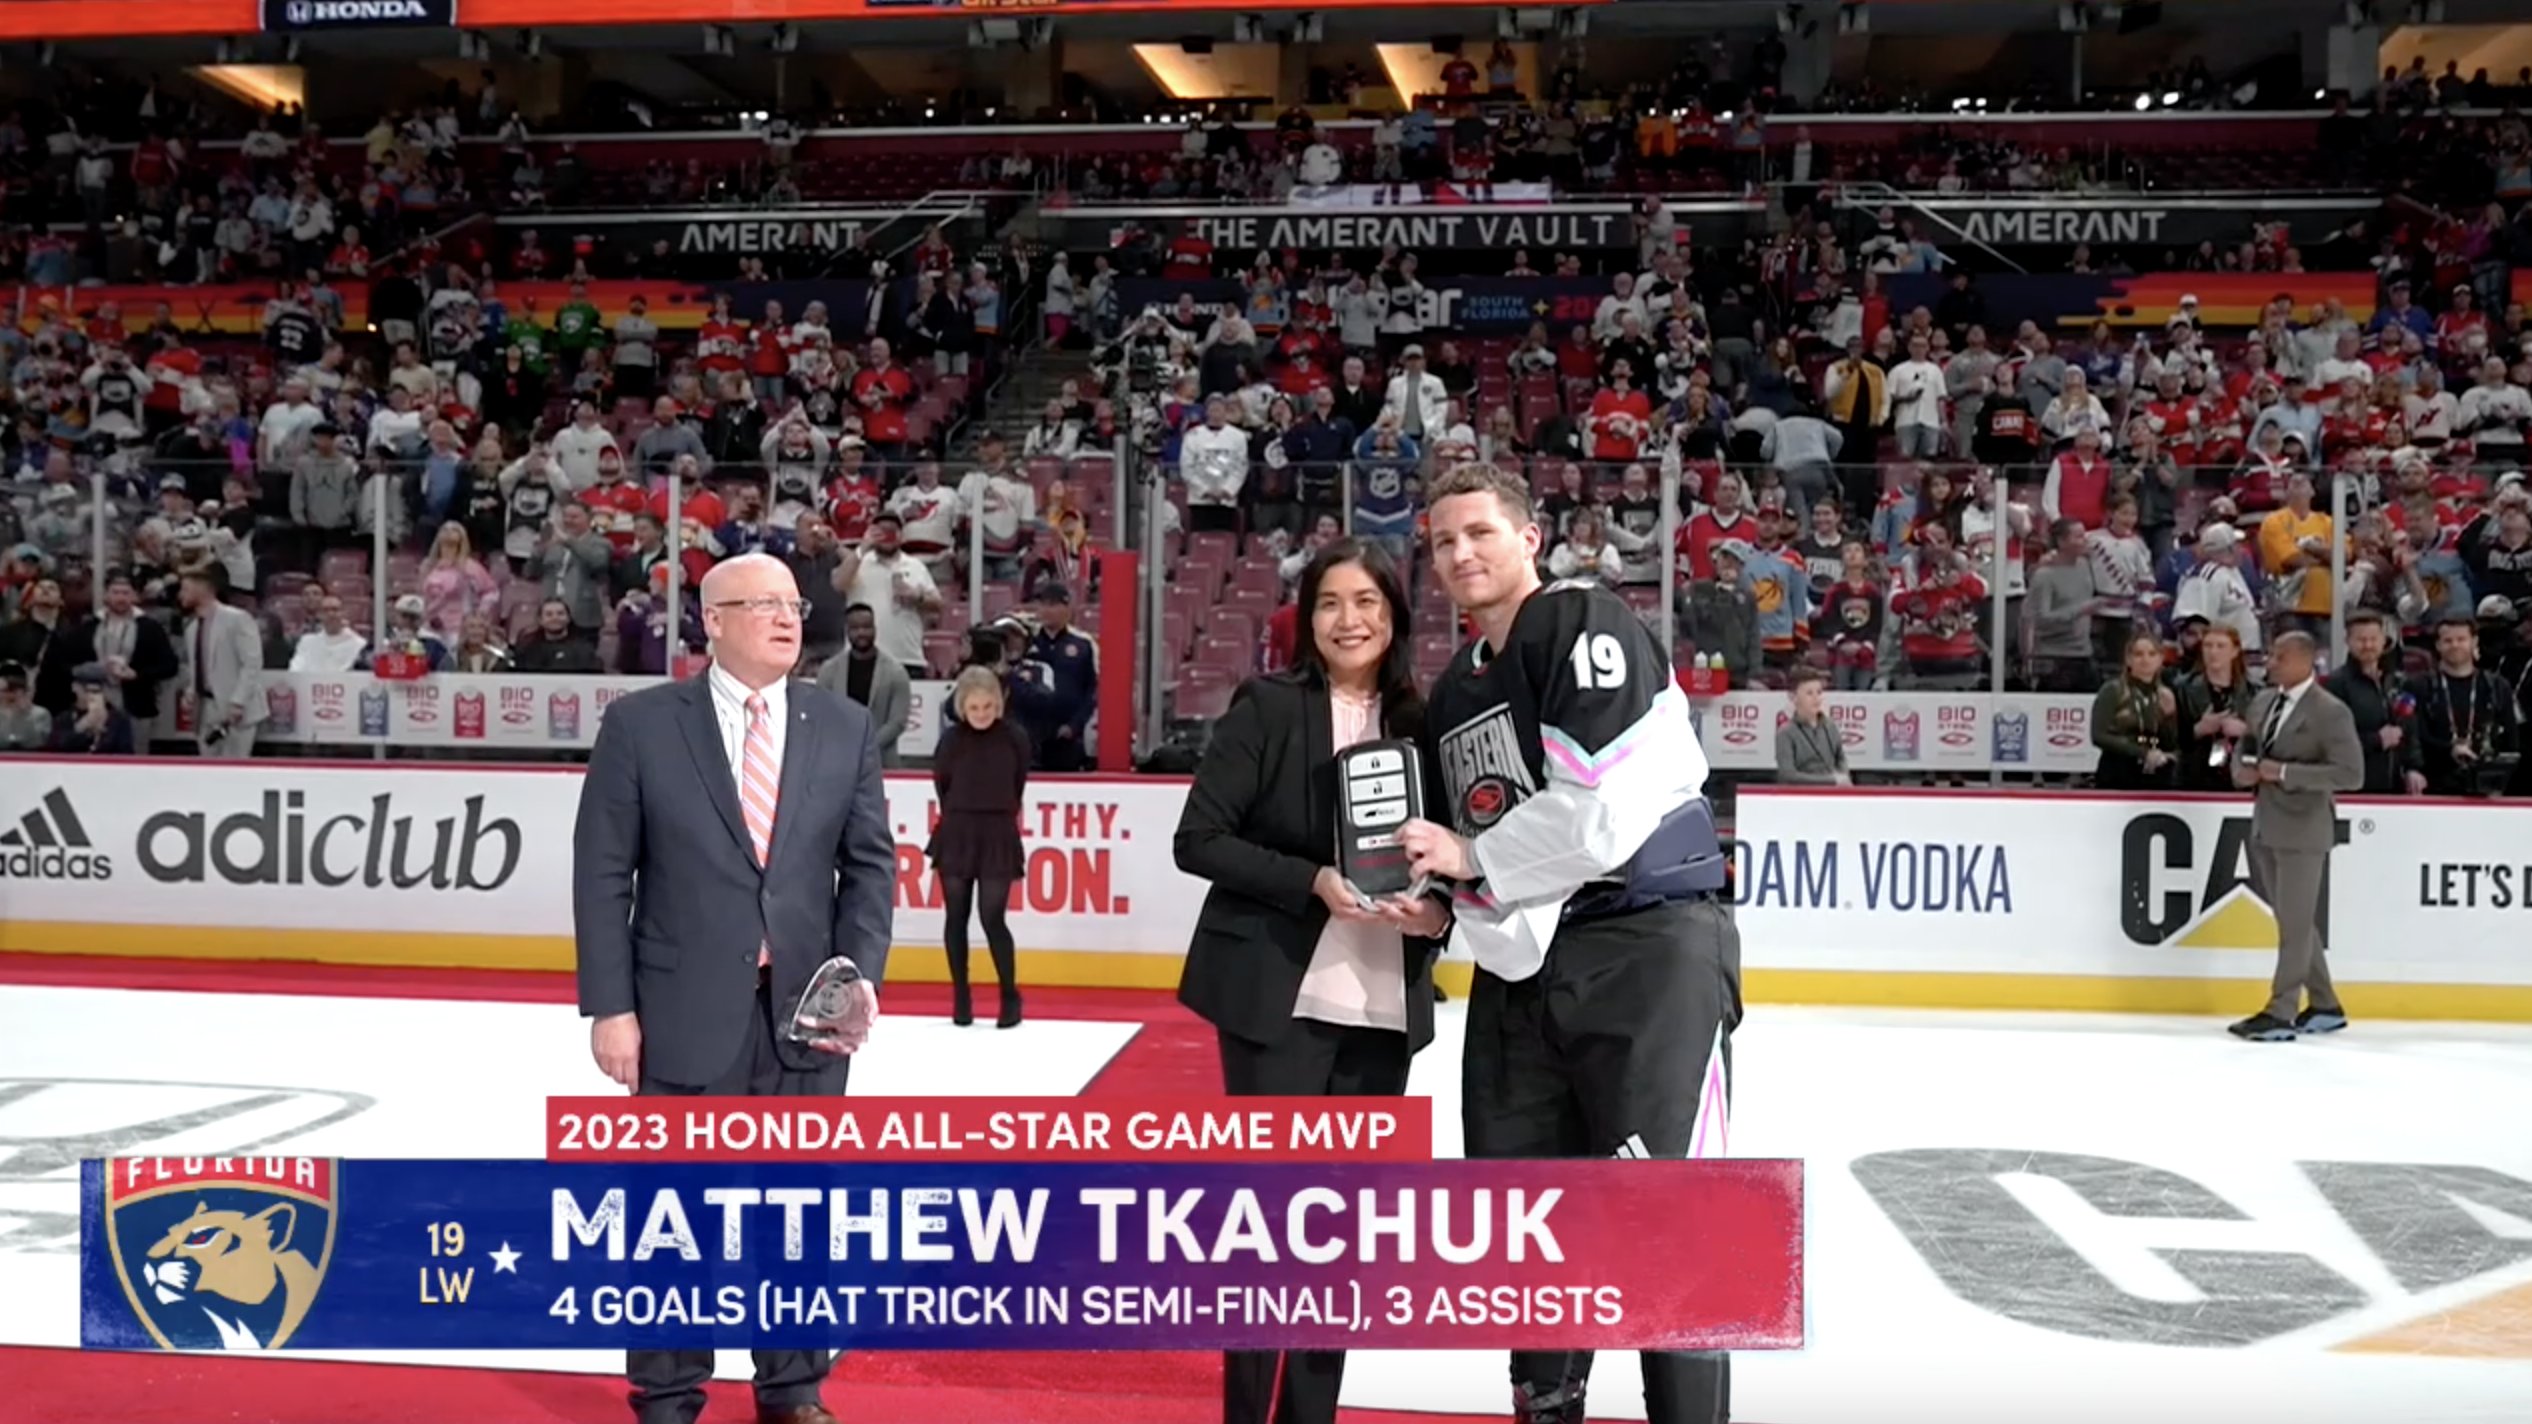 matthew_tkachuk is your 2023 @honda #NHLAllStar MVP! 🌴